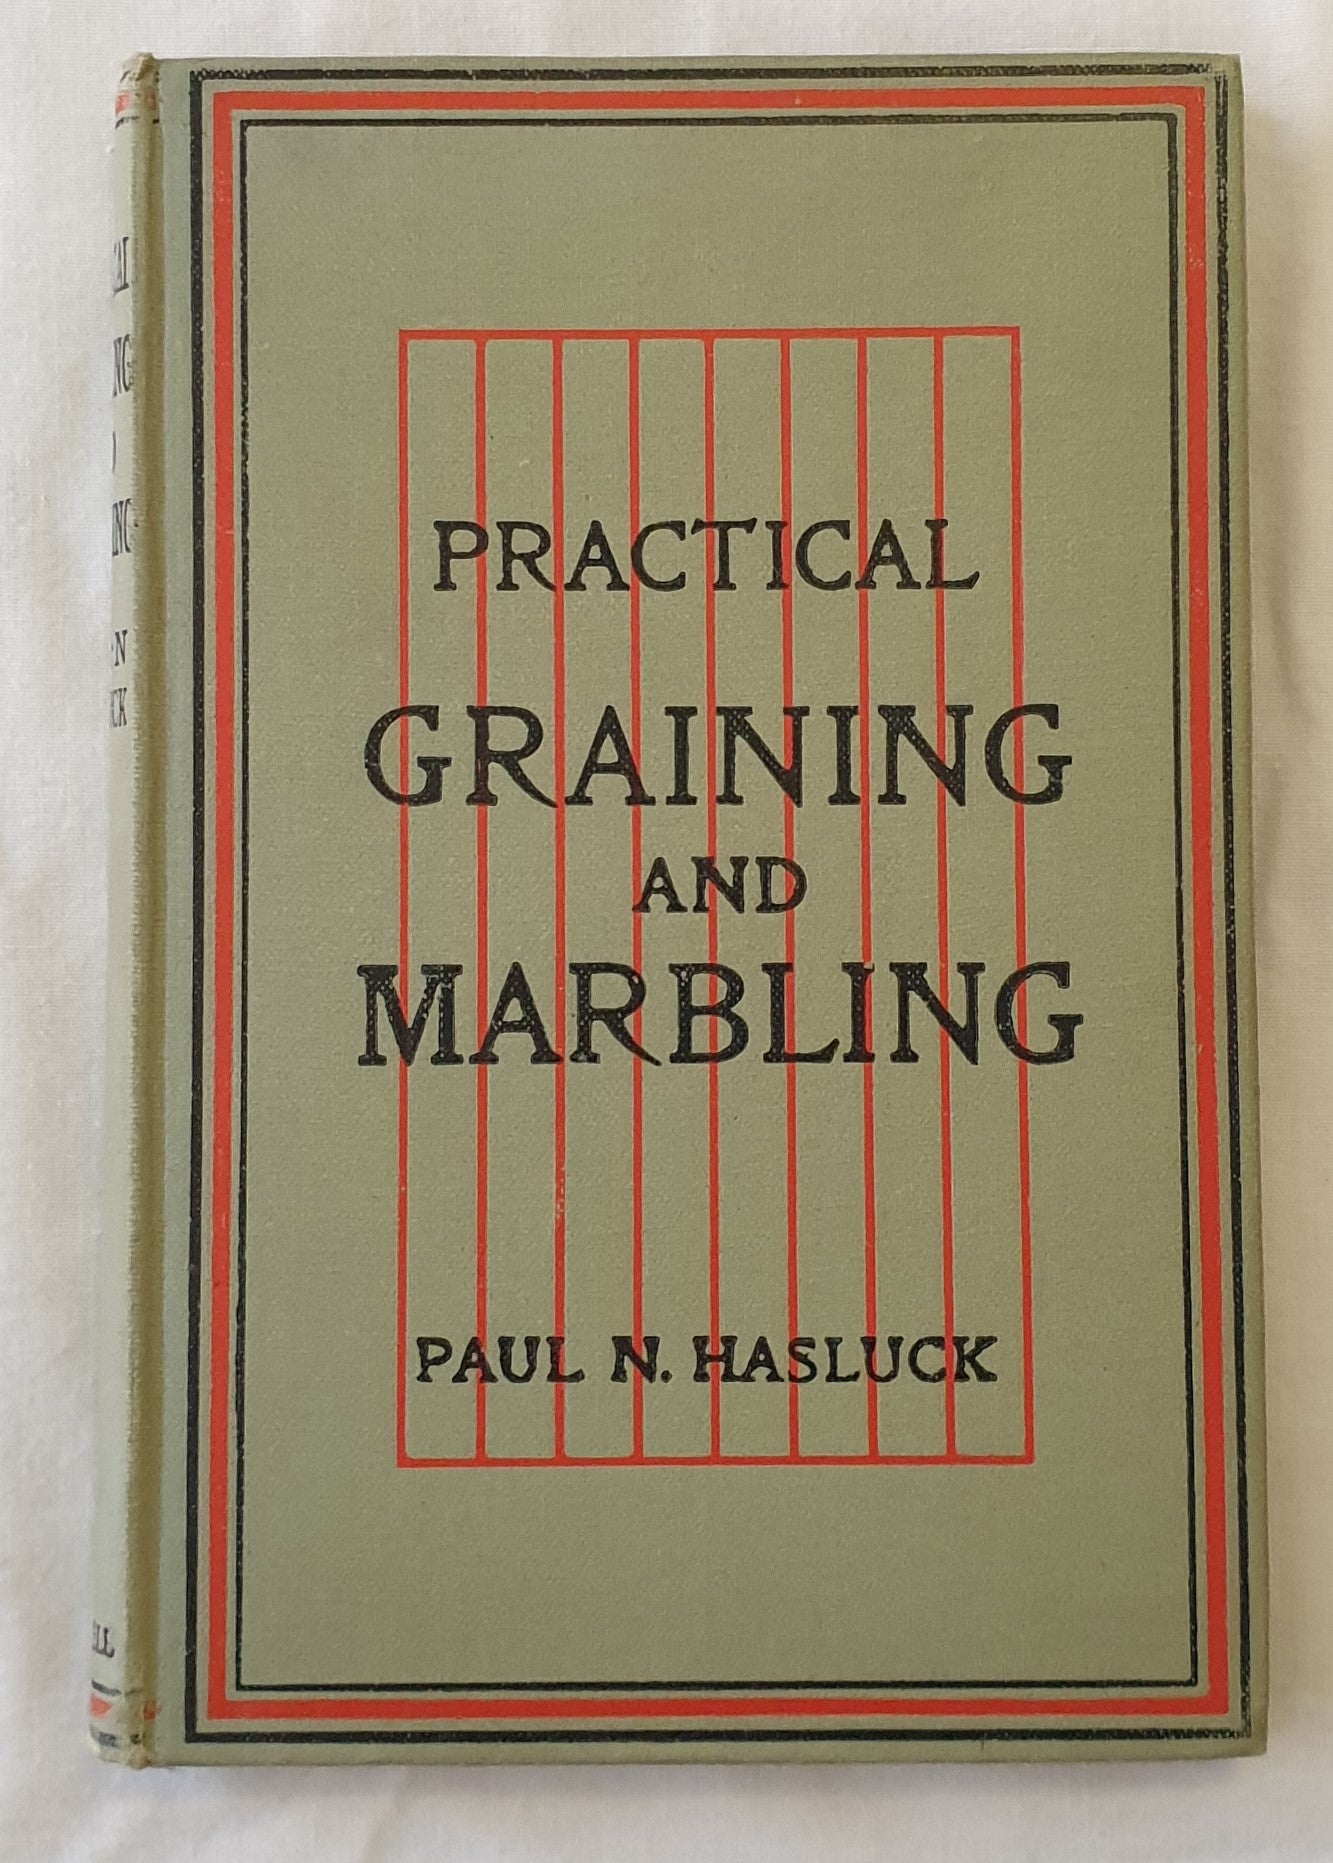 Practical Graining and Marbling by Paul N. Hasluck